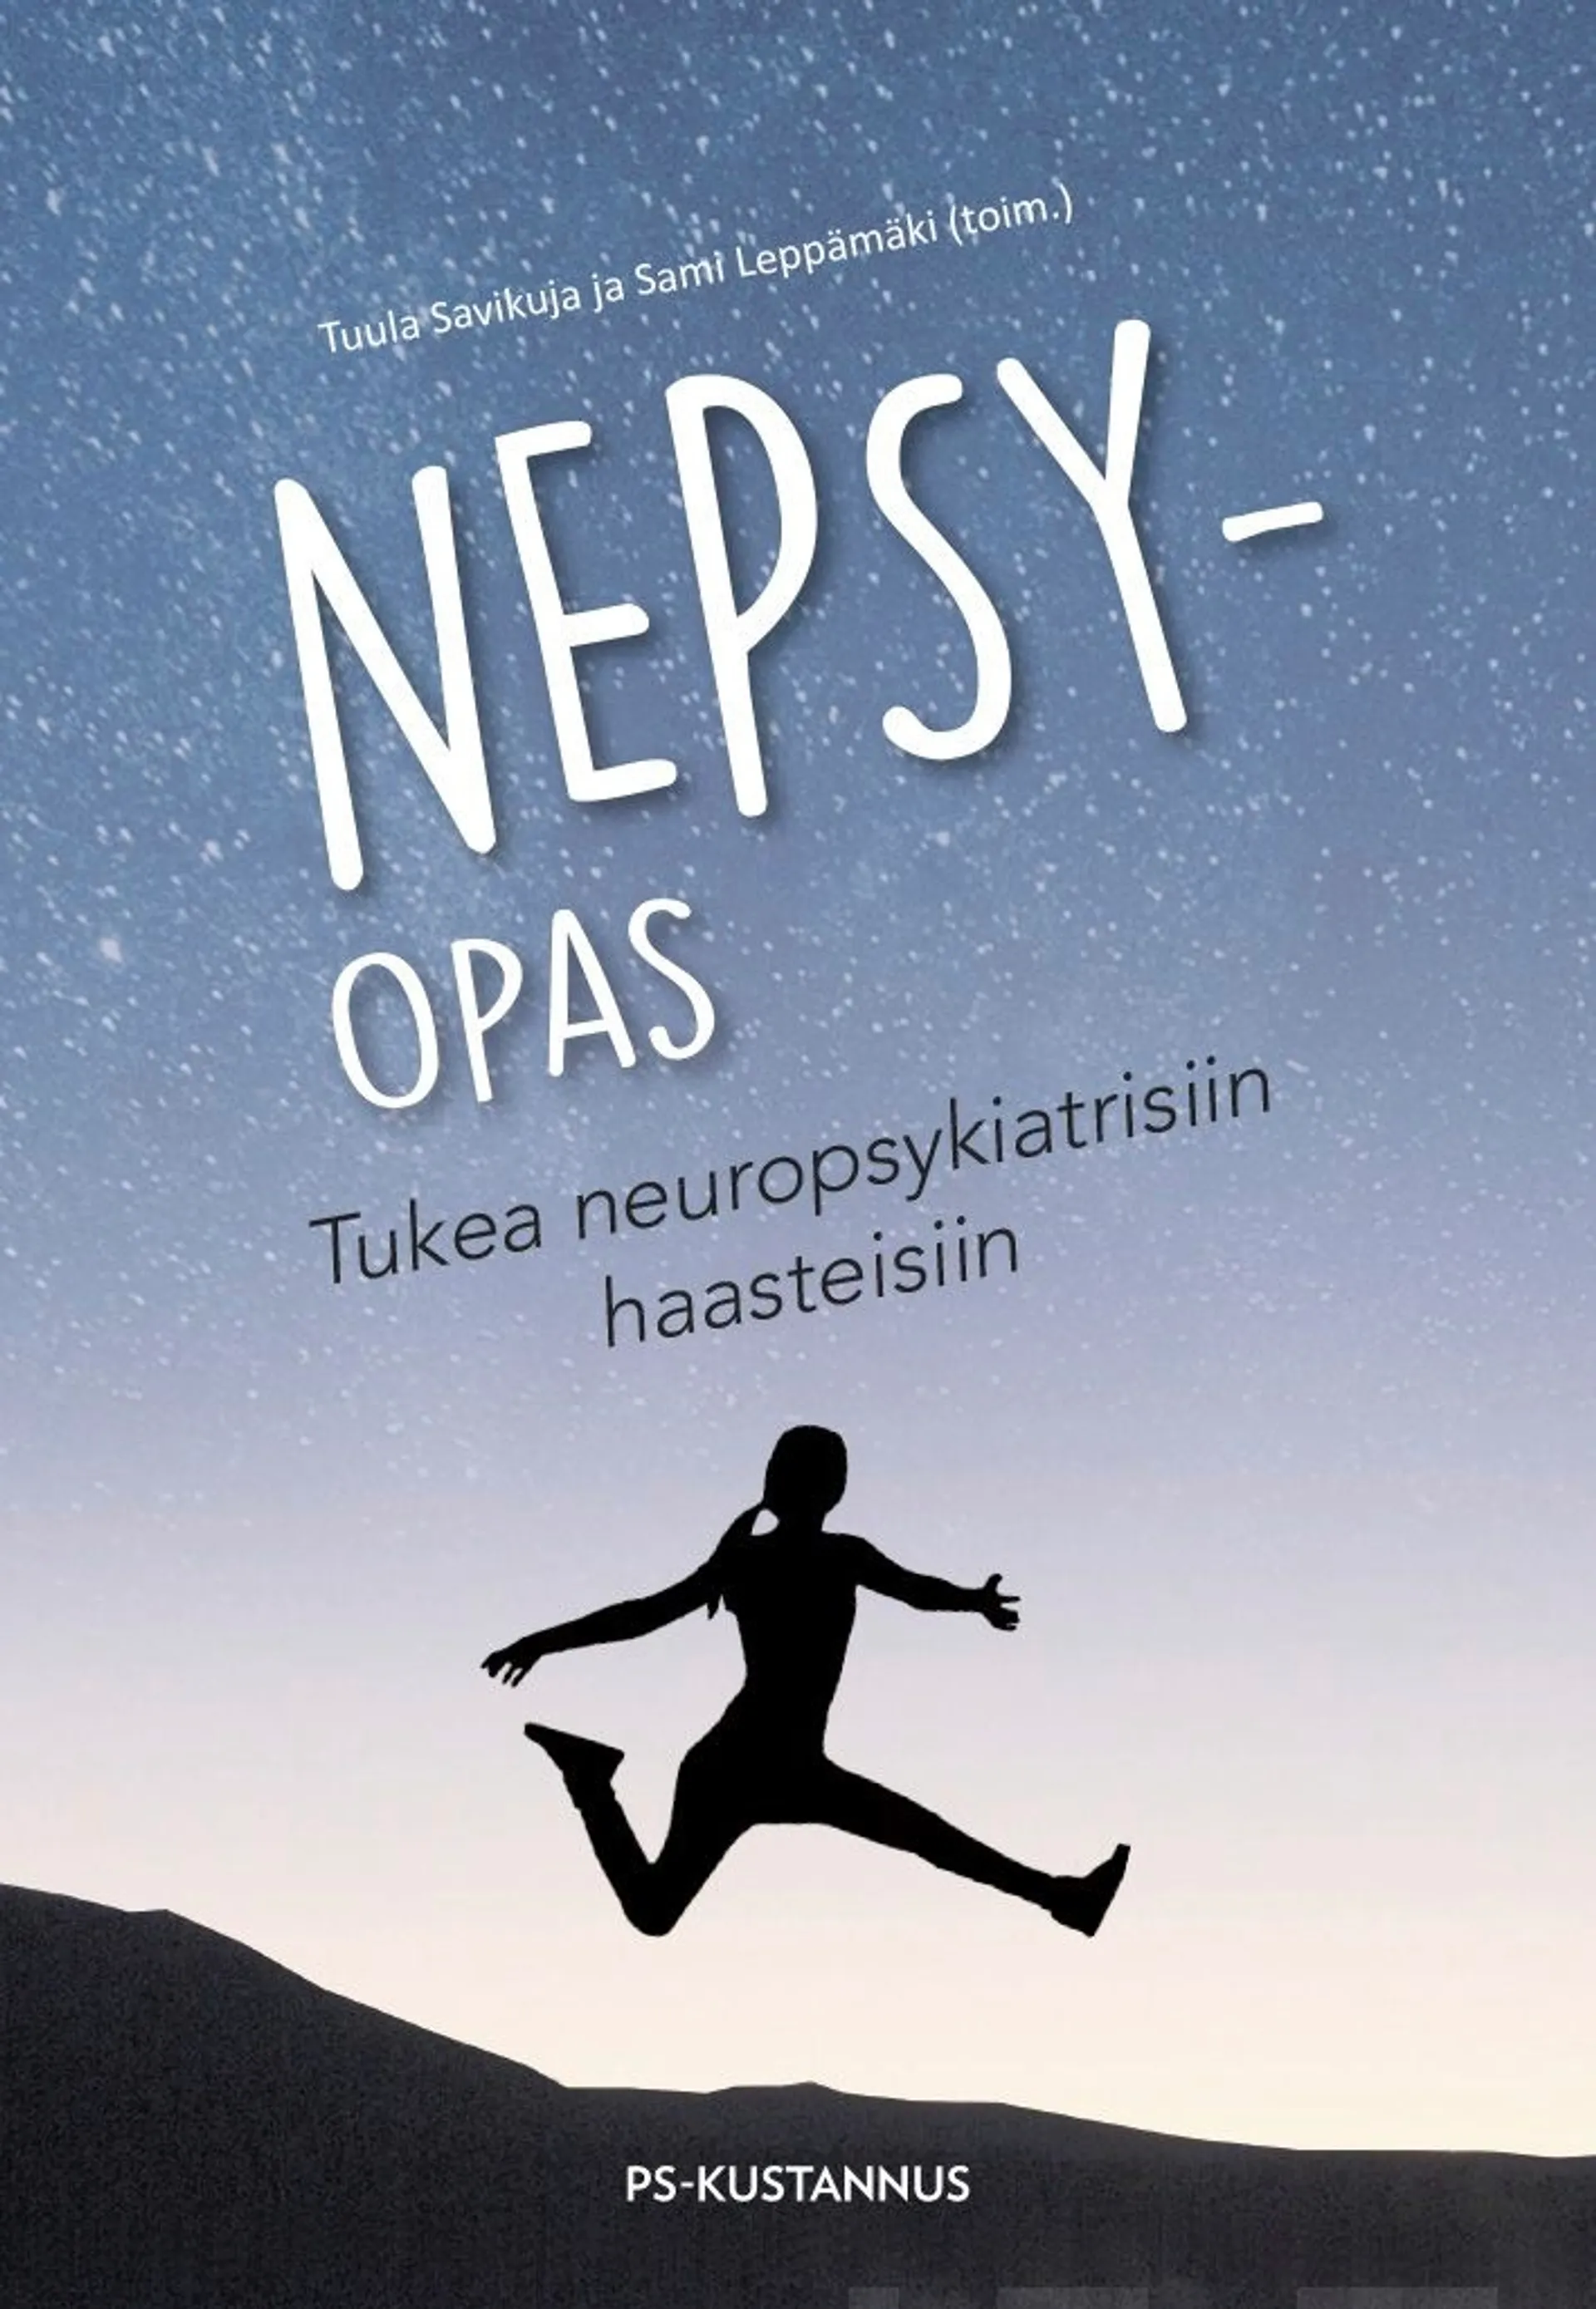 Nepsy-opas - Tukea neuropsykiatrisiin haasteisiin